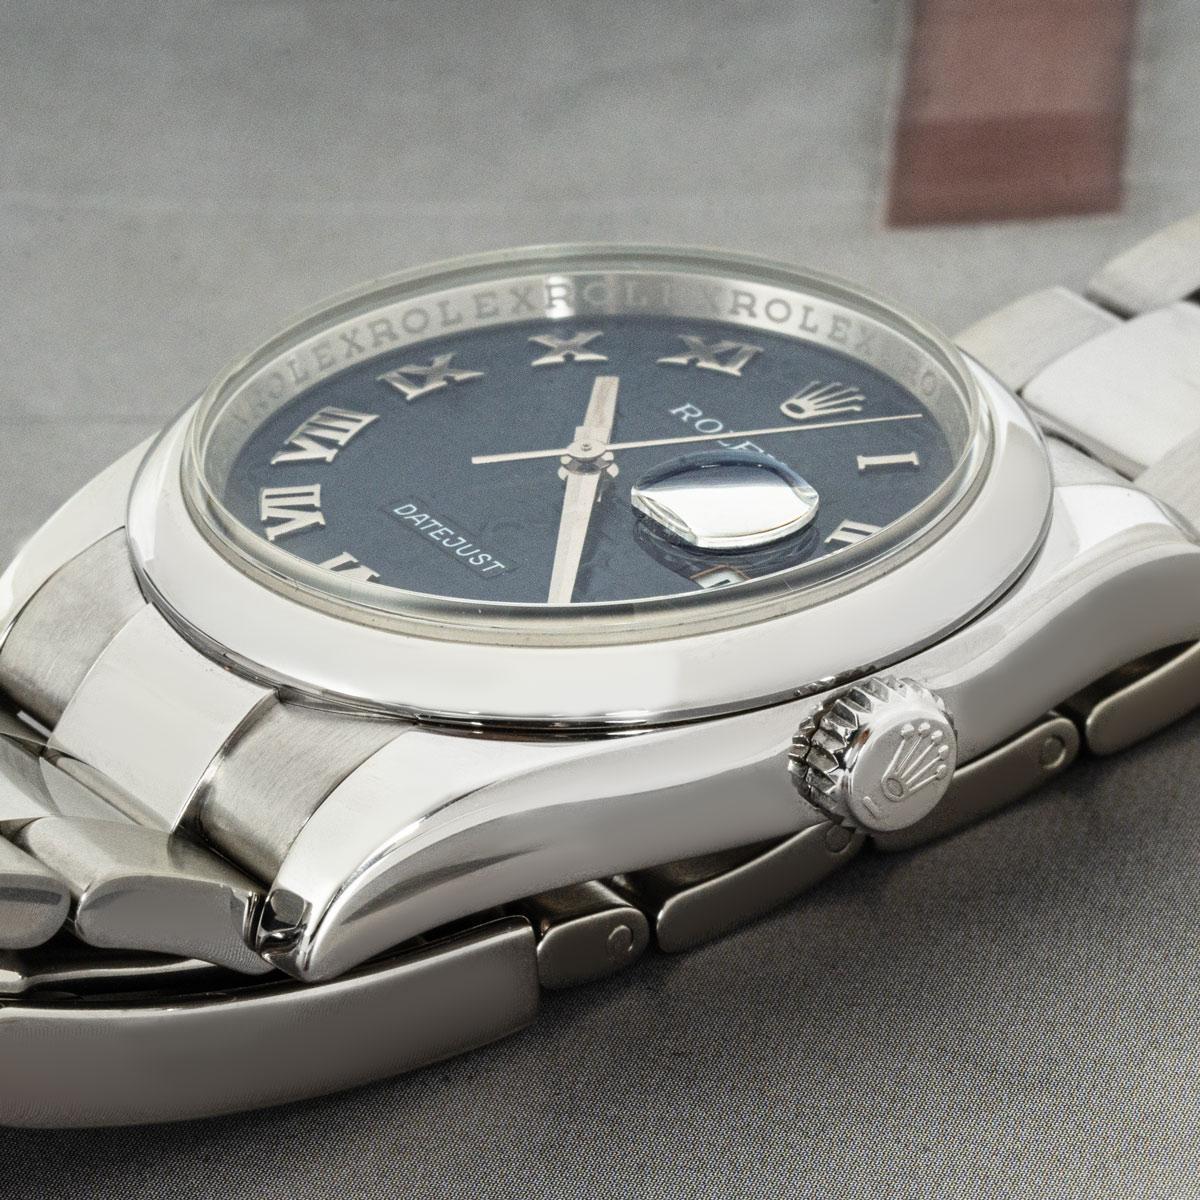 Eine 36-mm-Datejust von Rolex aus Edelstahl. Blaues Jubiläumszifferblatt mit aufgesetzten römischen Ziffern und glatter Lünette.

Ausgestattet mit Saphirglas und automatischem Uhrwerk mit Automatikaufzug. Die Uhr ist außerdem mit einem